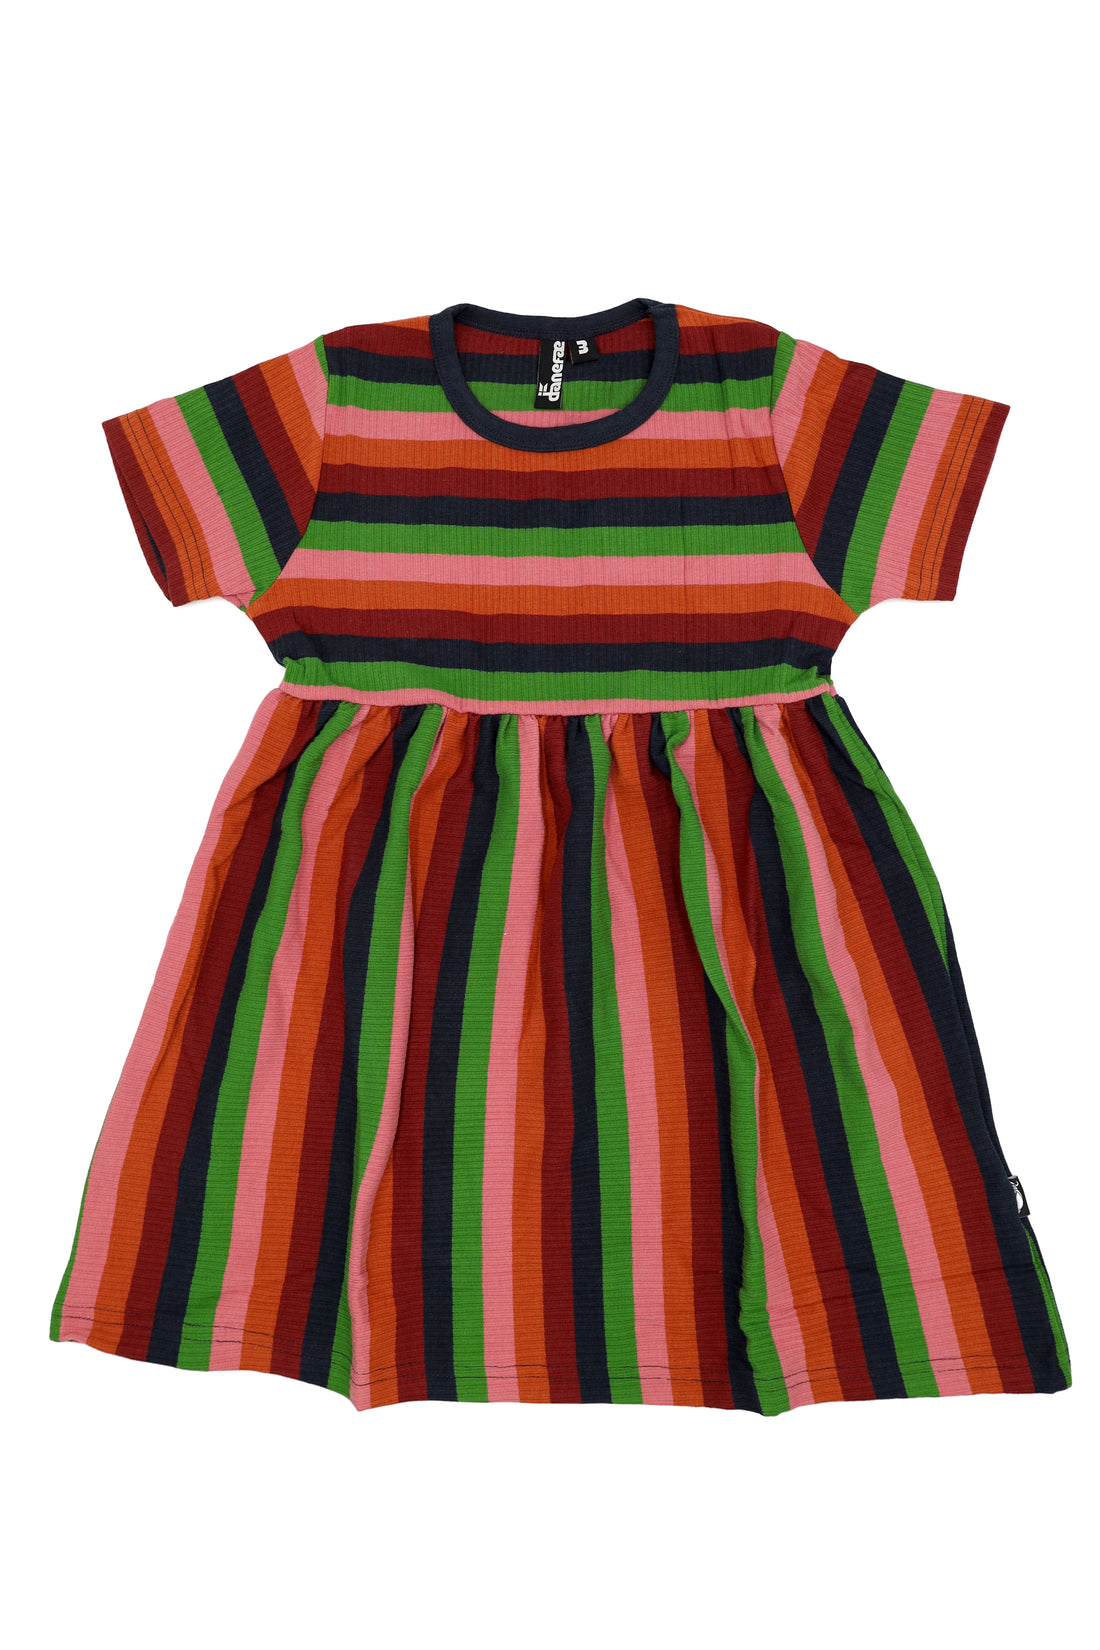 ESS - Daneslurpy Dress Comfort Stripe